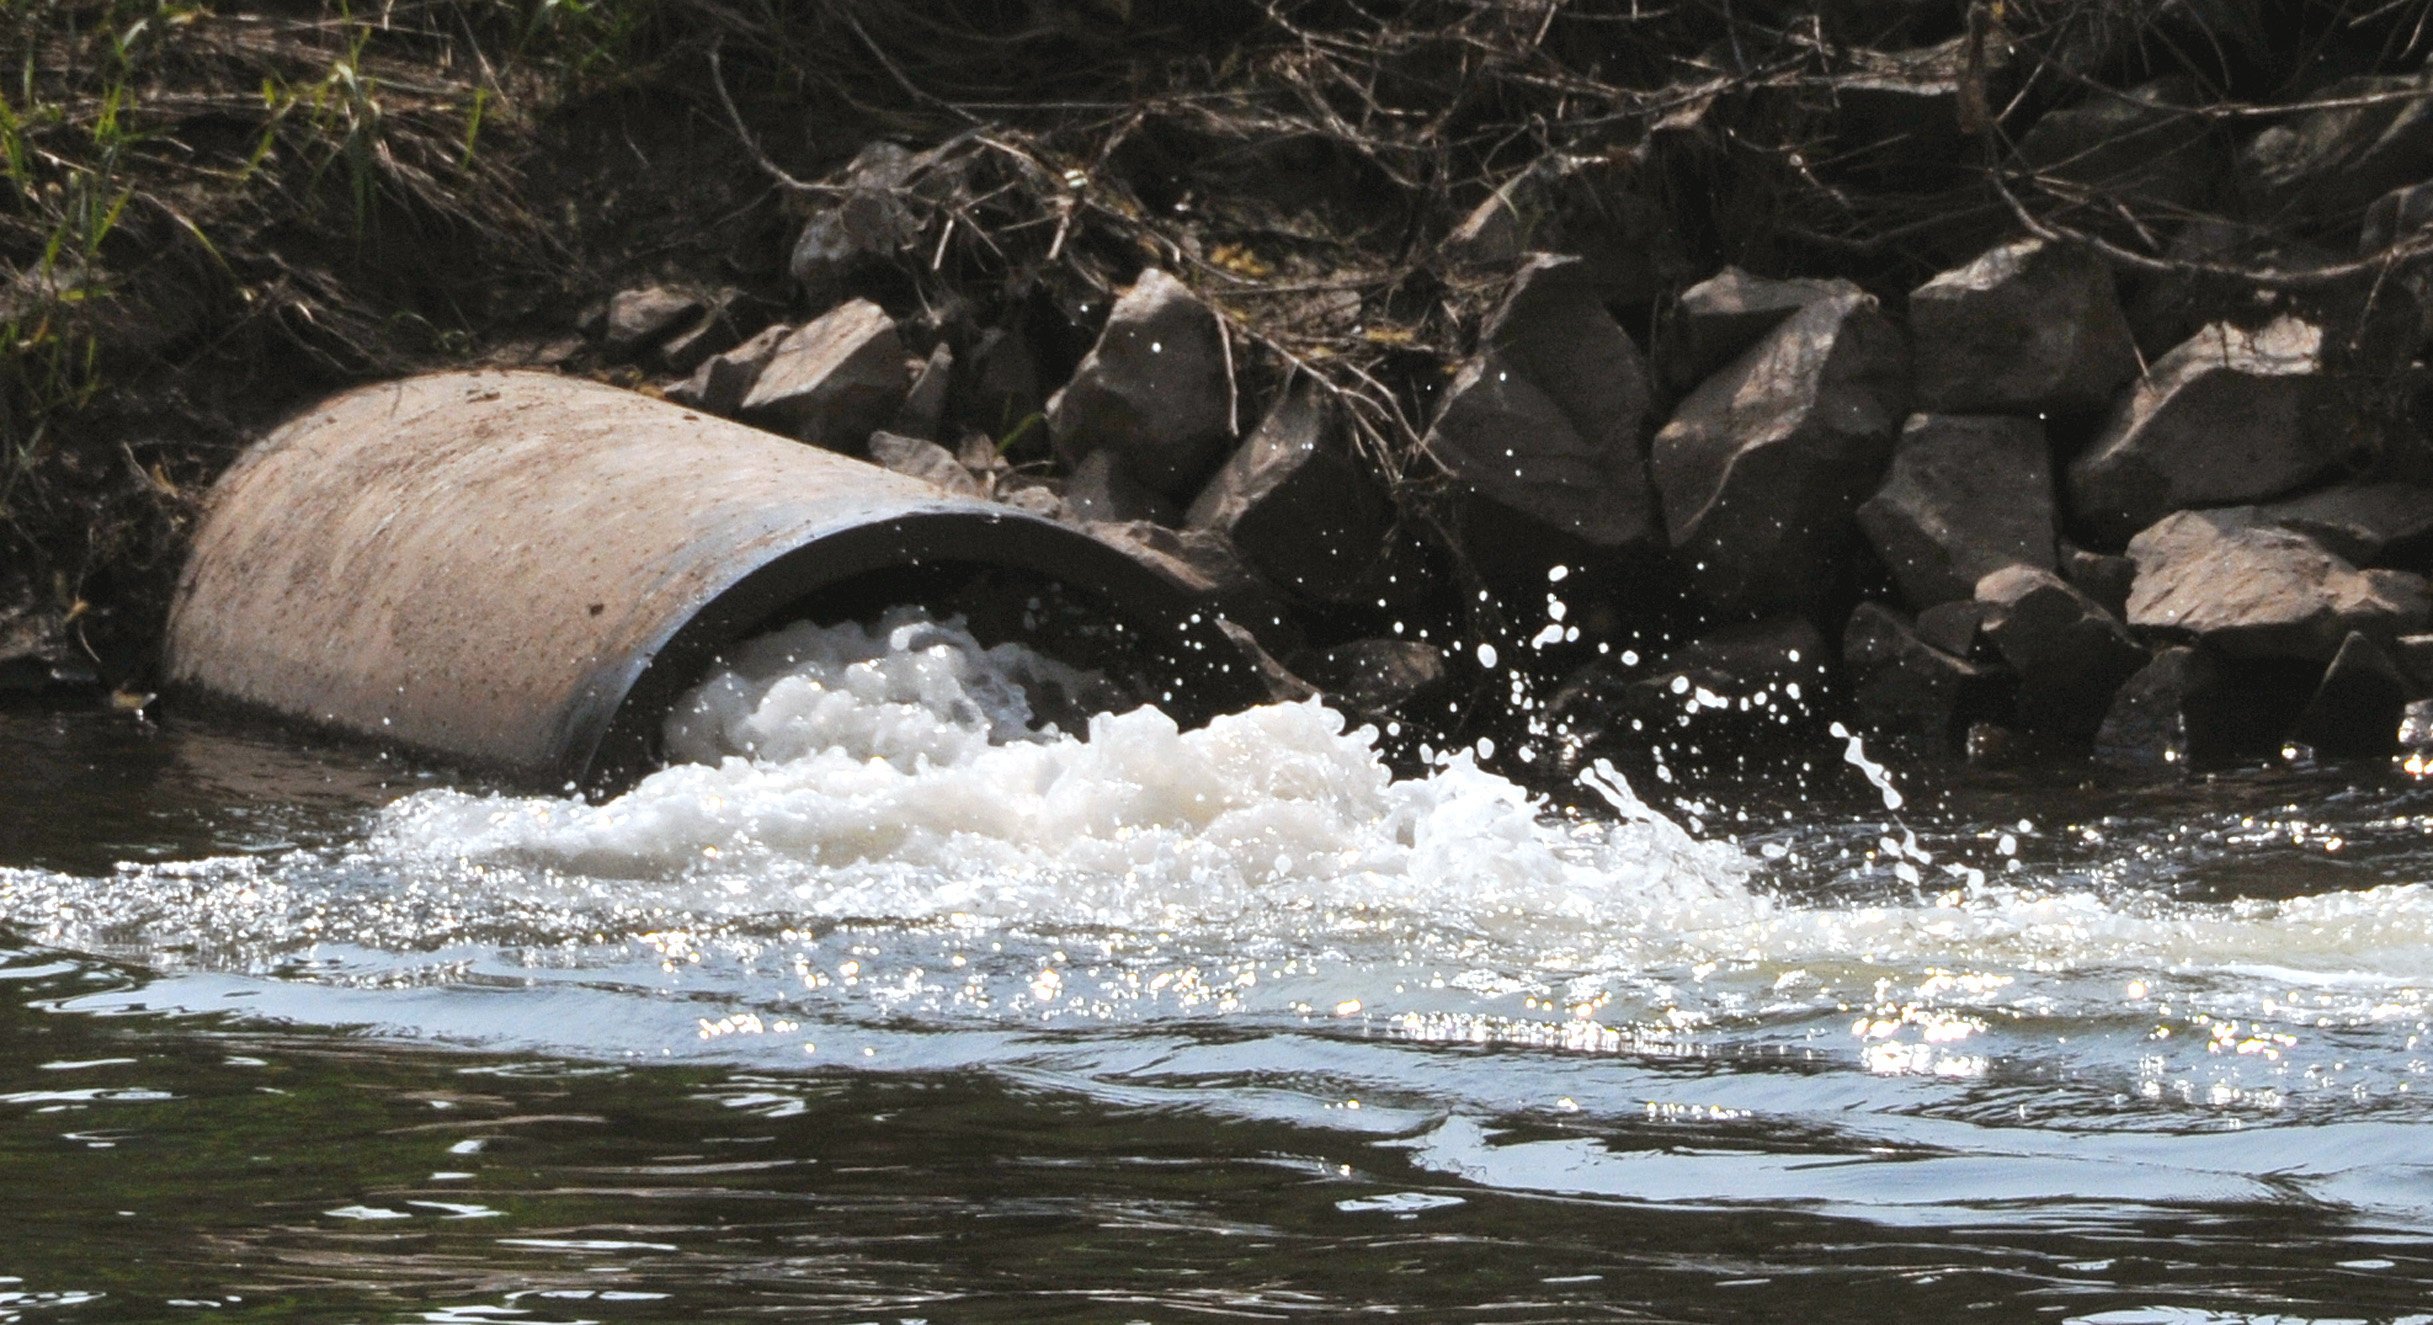 Abwasser fließt in einen Fluß: Fraunhofer-Forscher haben eine marktreife Anlage entwickelt, mit der sie Dünger aus Abwasser gewinnen, ohne dass Chemikalien zugegeben werden müssen. 